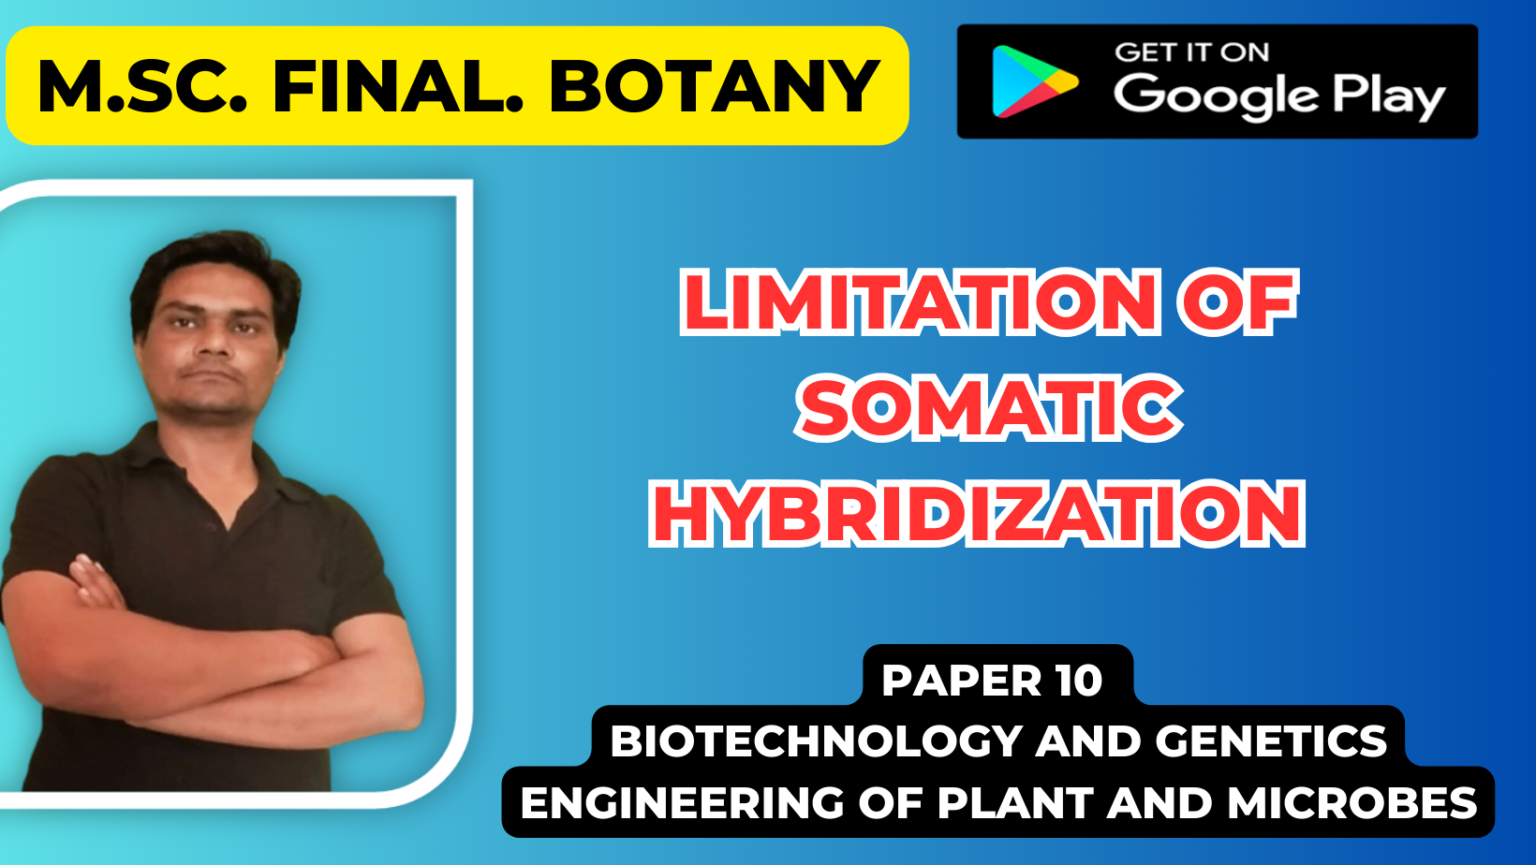 Limitation of Somatic Hybridization